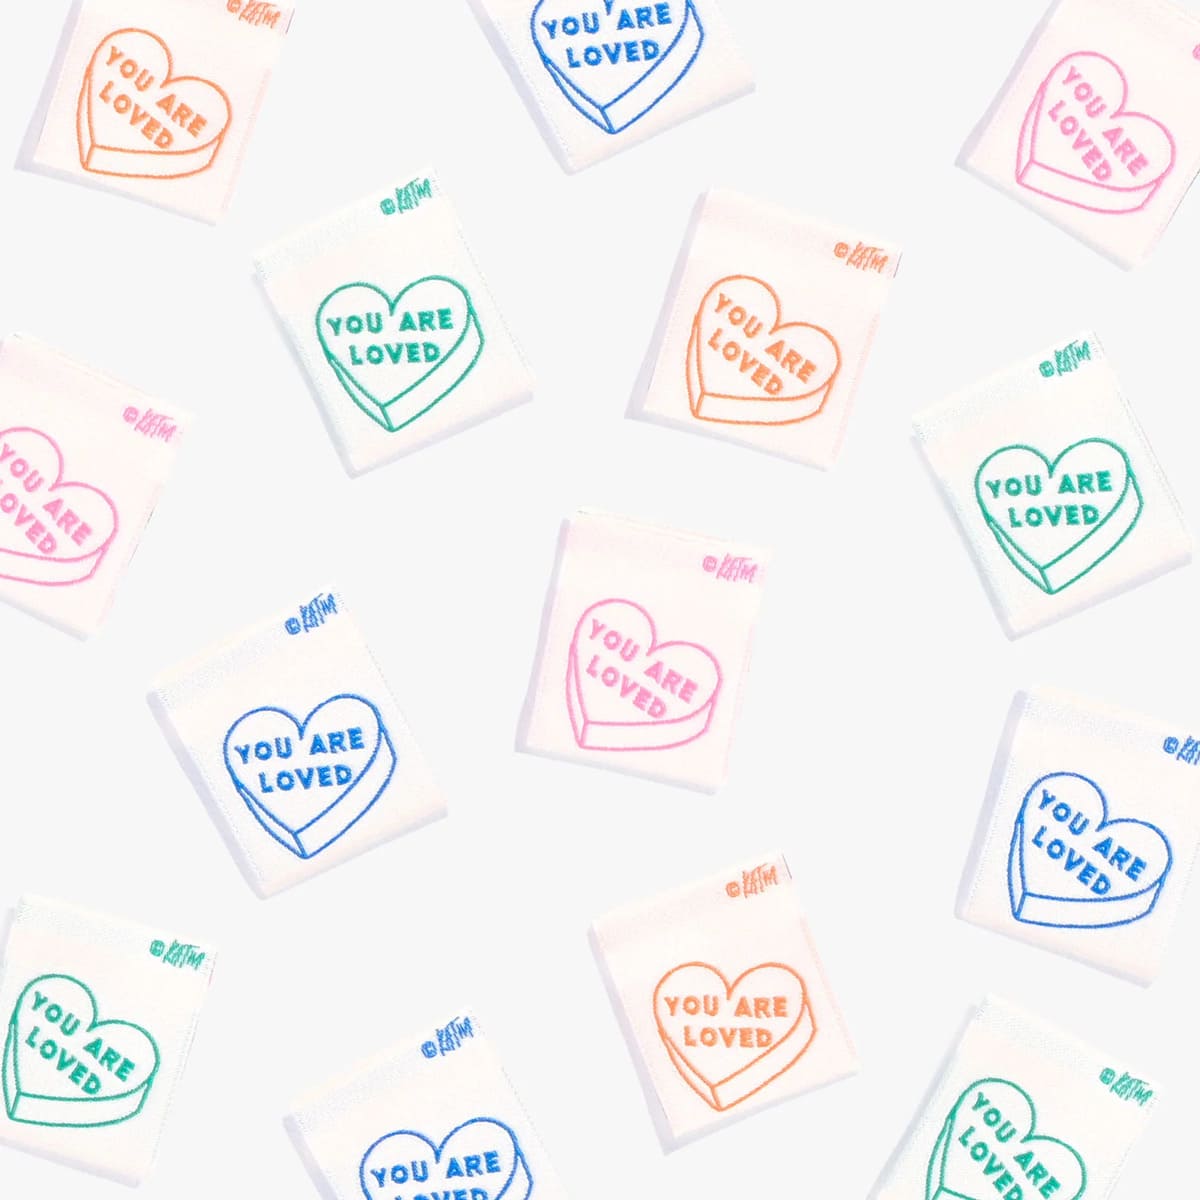 Sticker for Sale mit Marken mit italienischem Herzen - Ich liebe